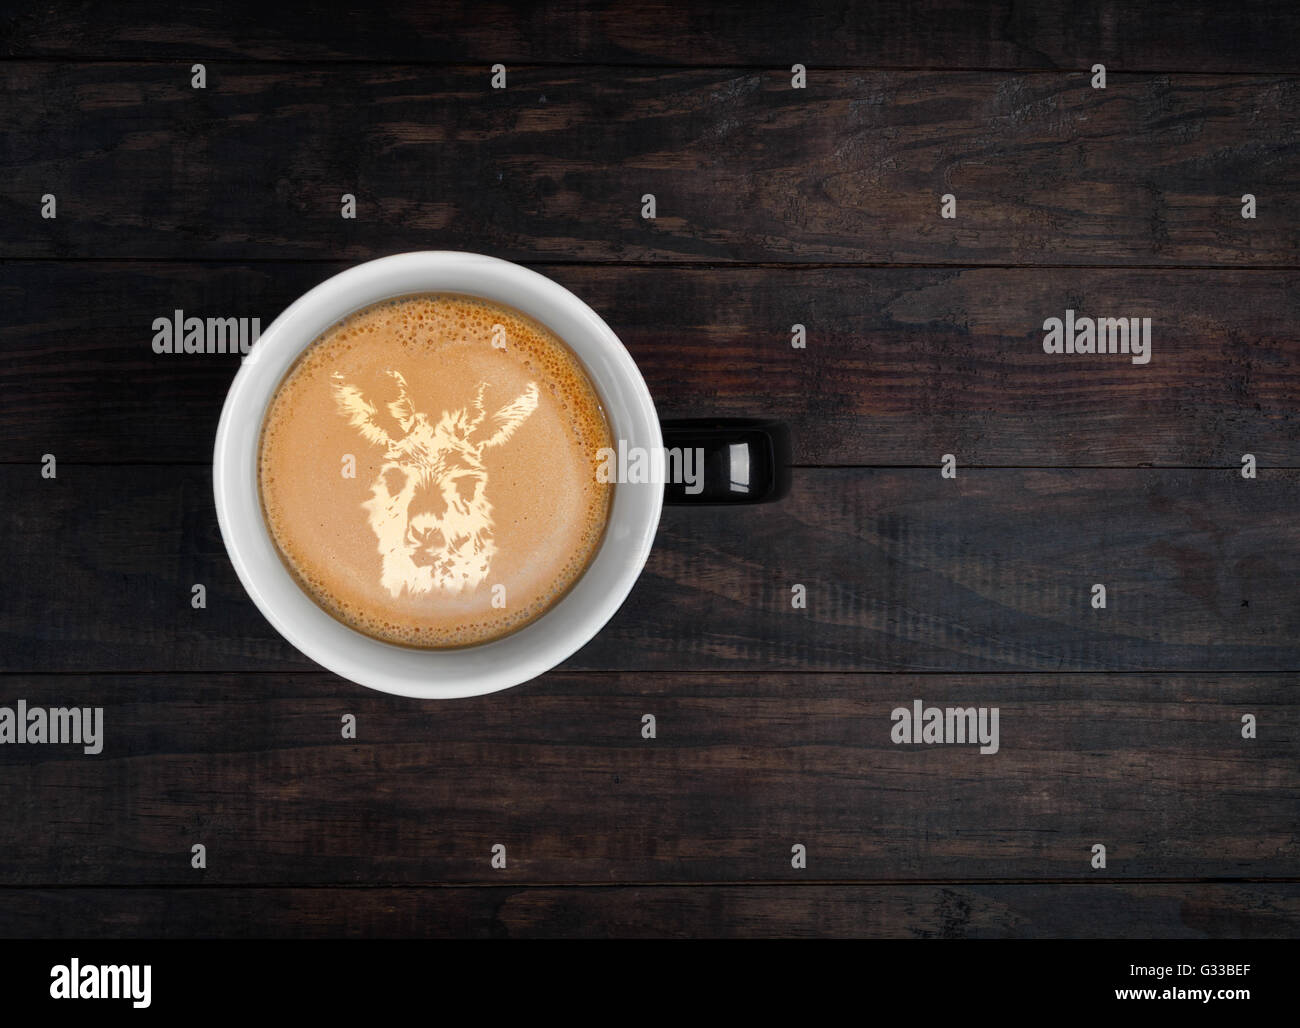 Latte art - portrait de kangourou fait sur la mousse sur une tasse de café. Top View with copy space Banque D'Images